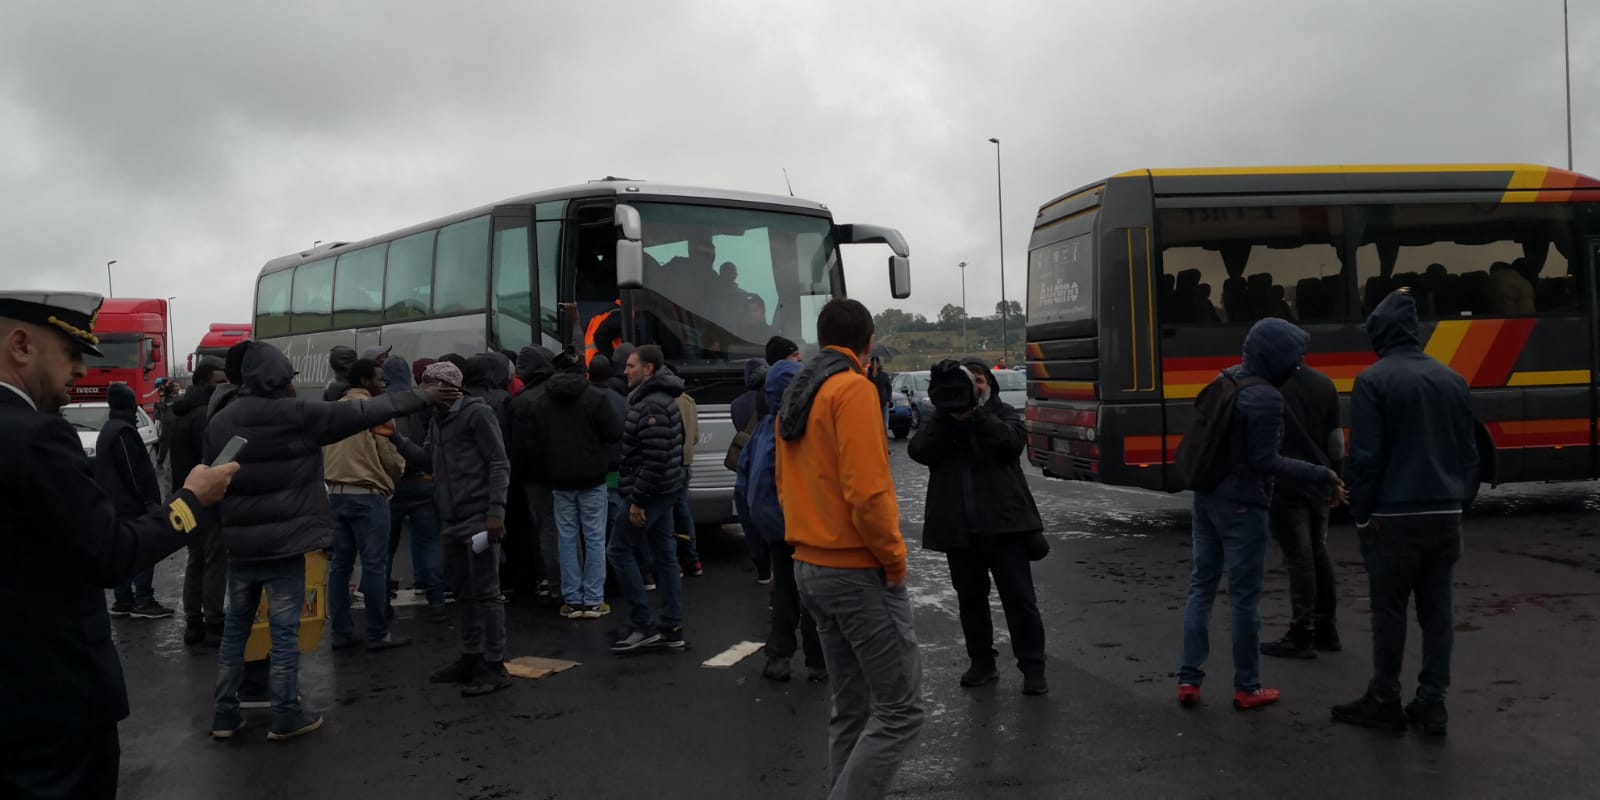 Porto, mediazione riuscita: sbloccati i varchi. La protesta si sposta a Reggio